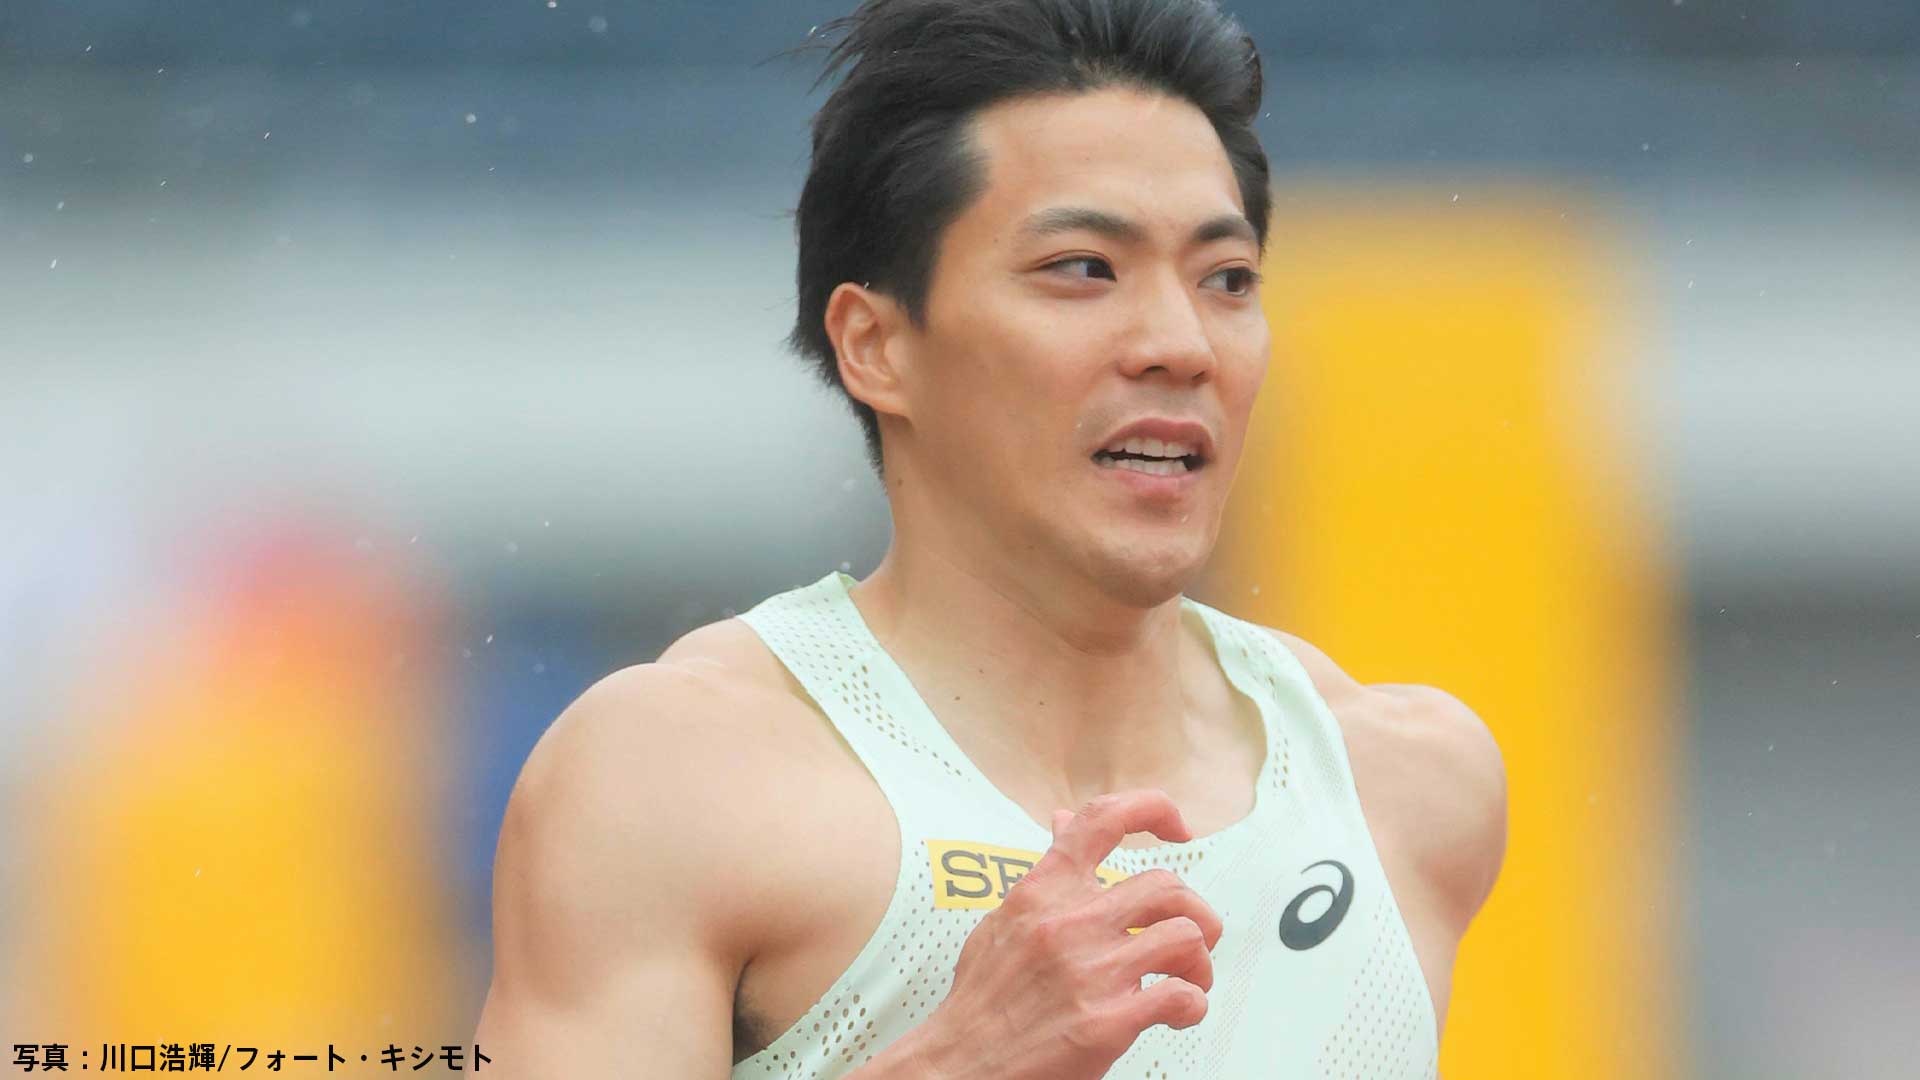 男子100m、山縣亮太が10秒58でA決勝進めず...多田修平は右ふくらはぎ肉離れのアクシデントで途中棄権【織田記念陸上】